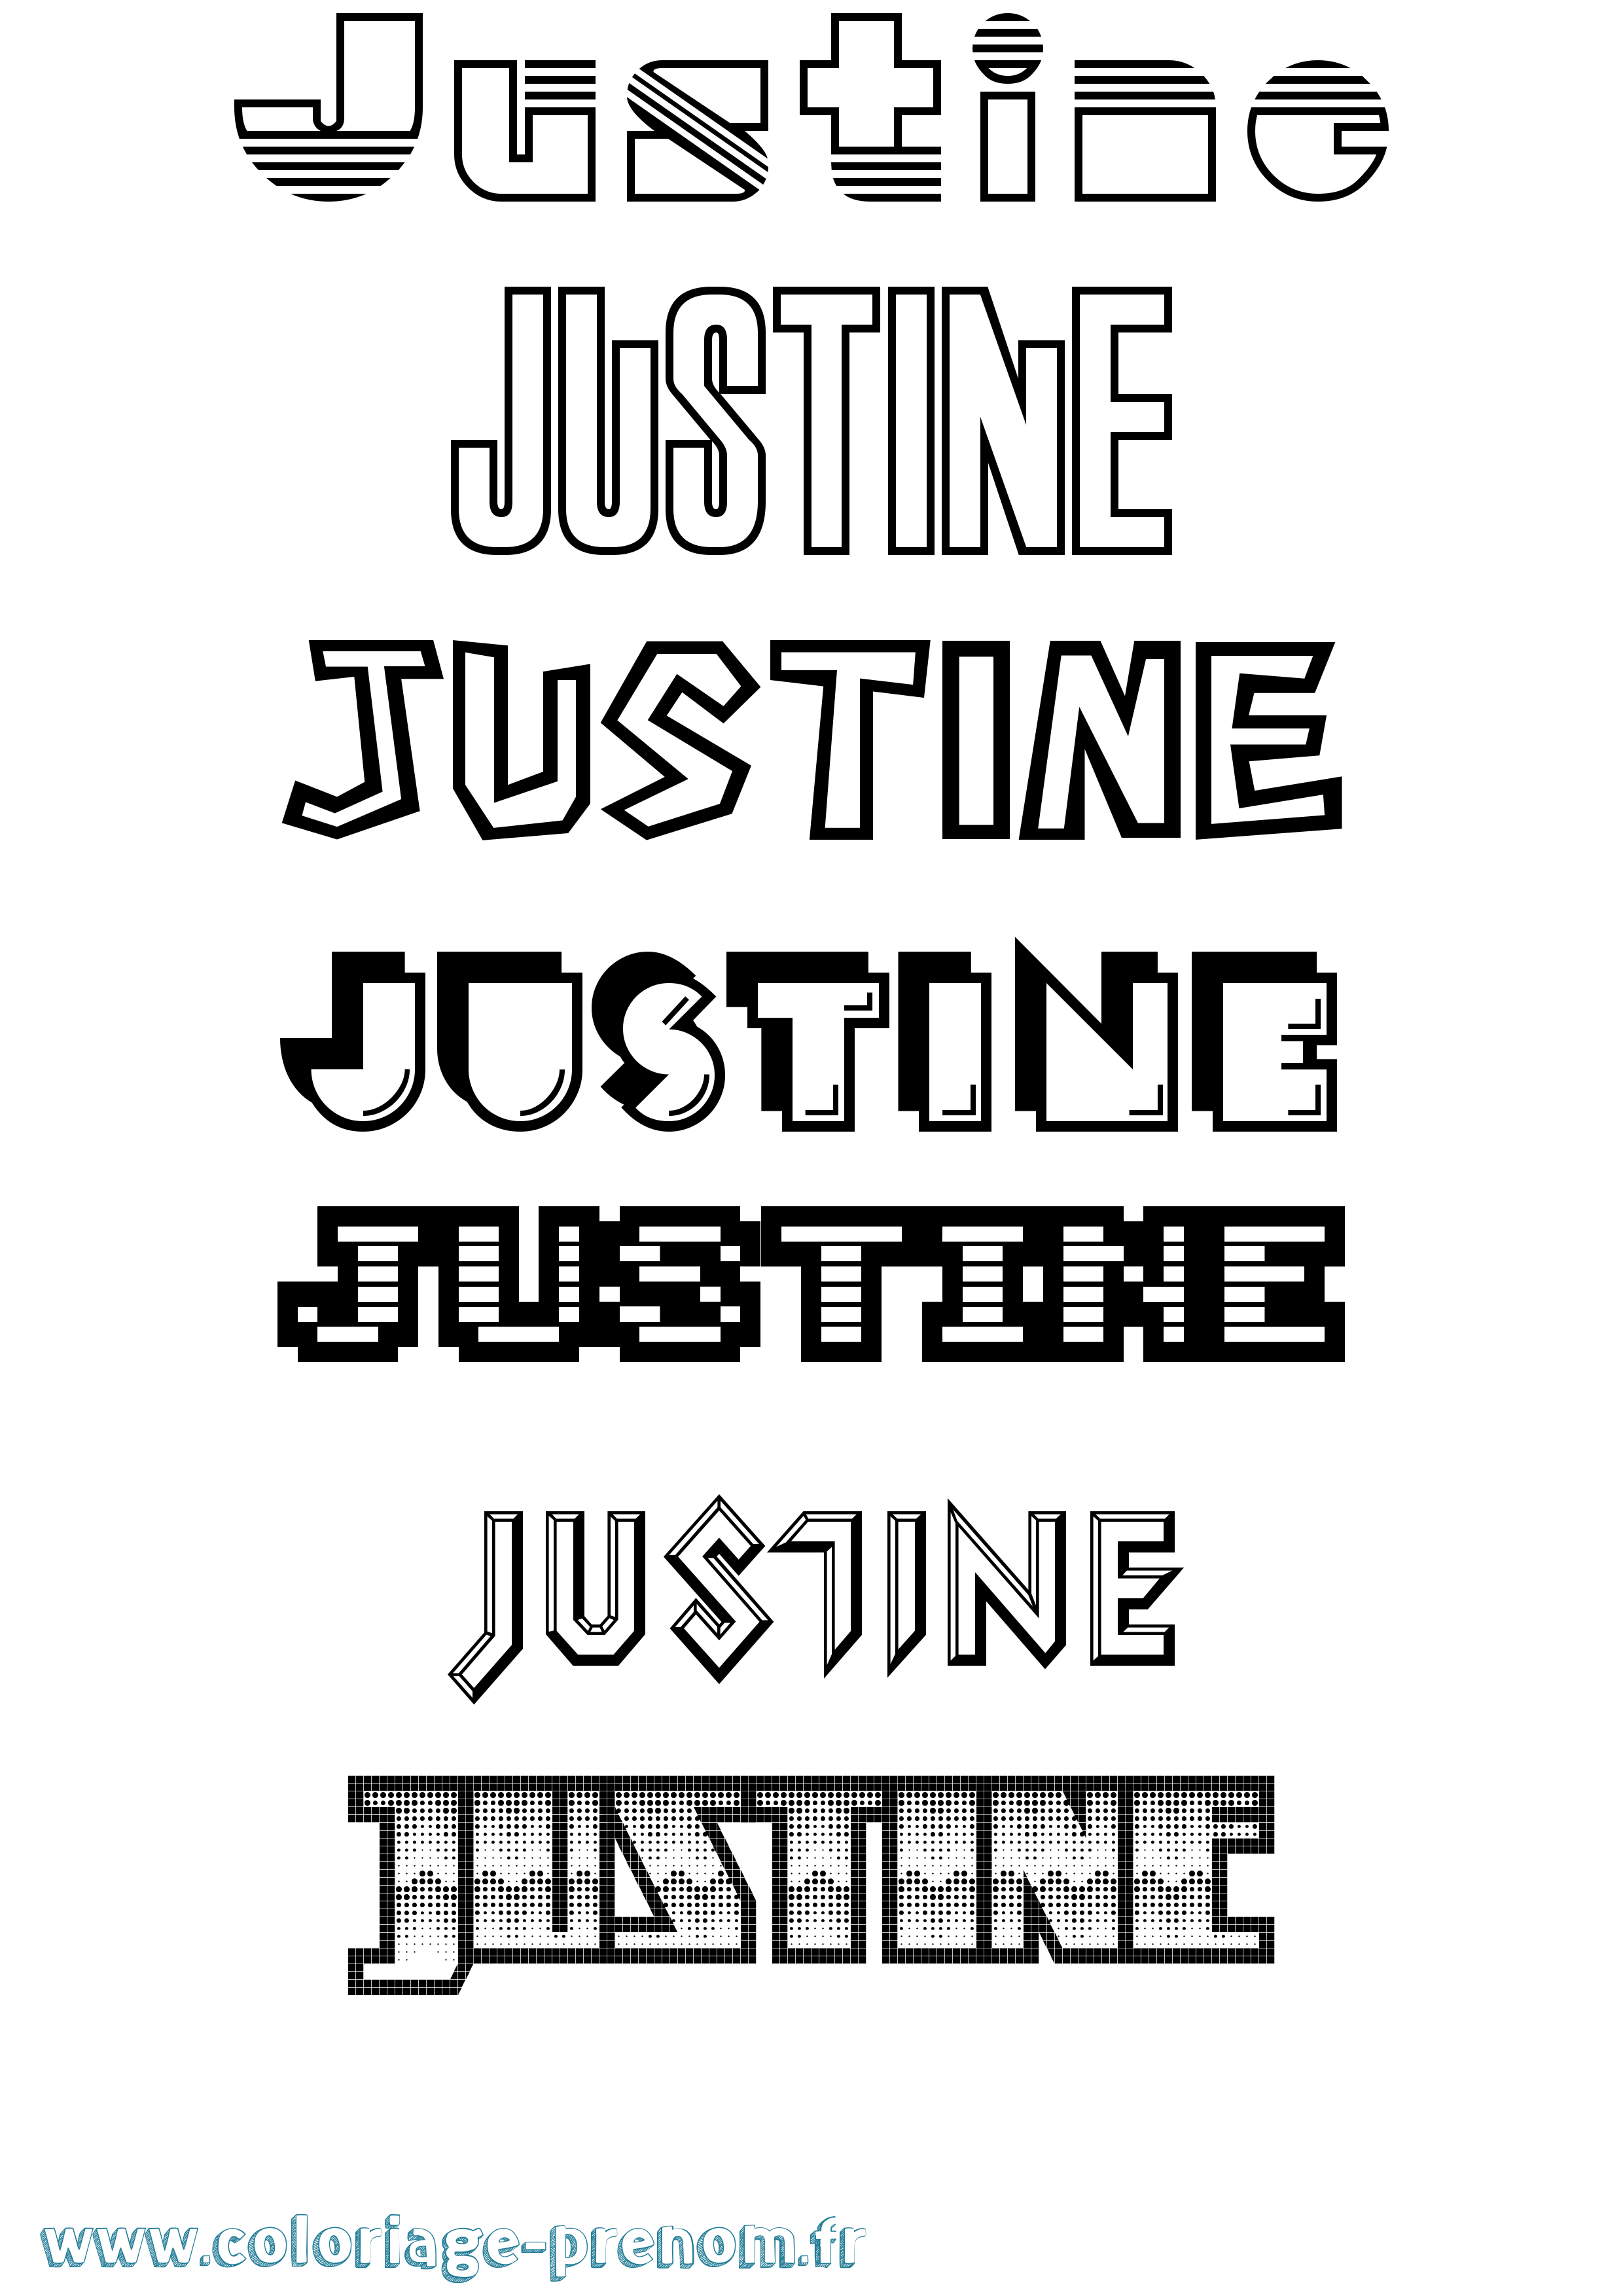 Coloriage prénom Justine Jeux Vidéos